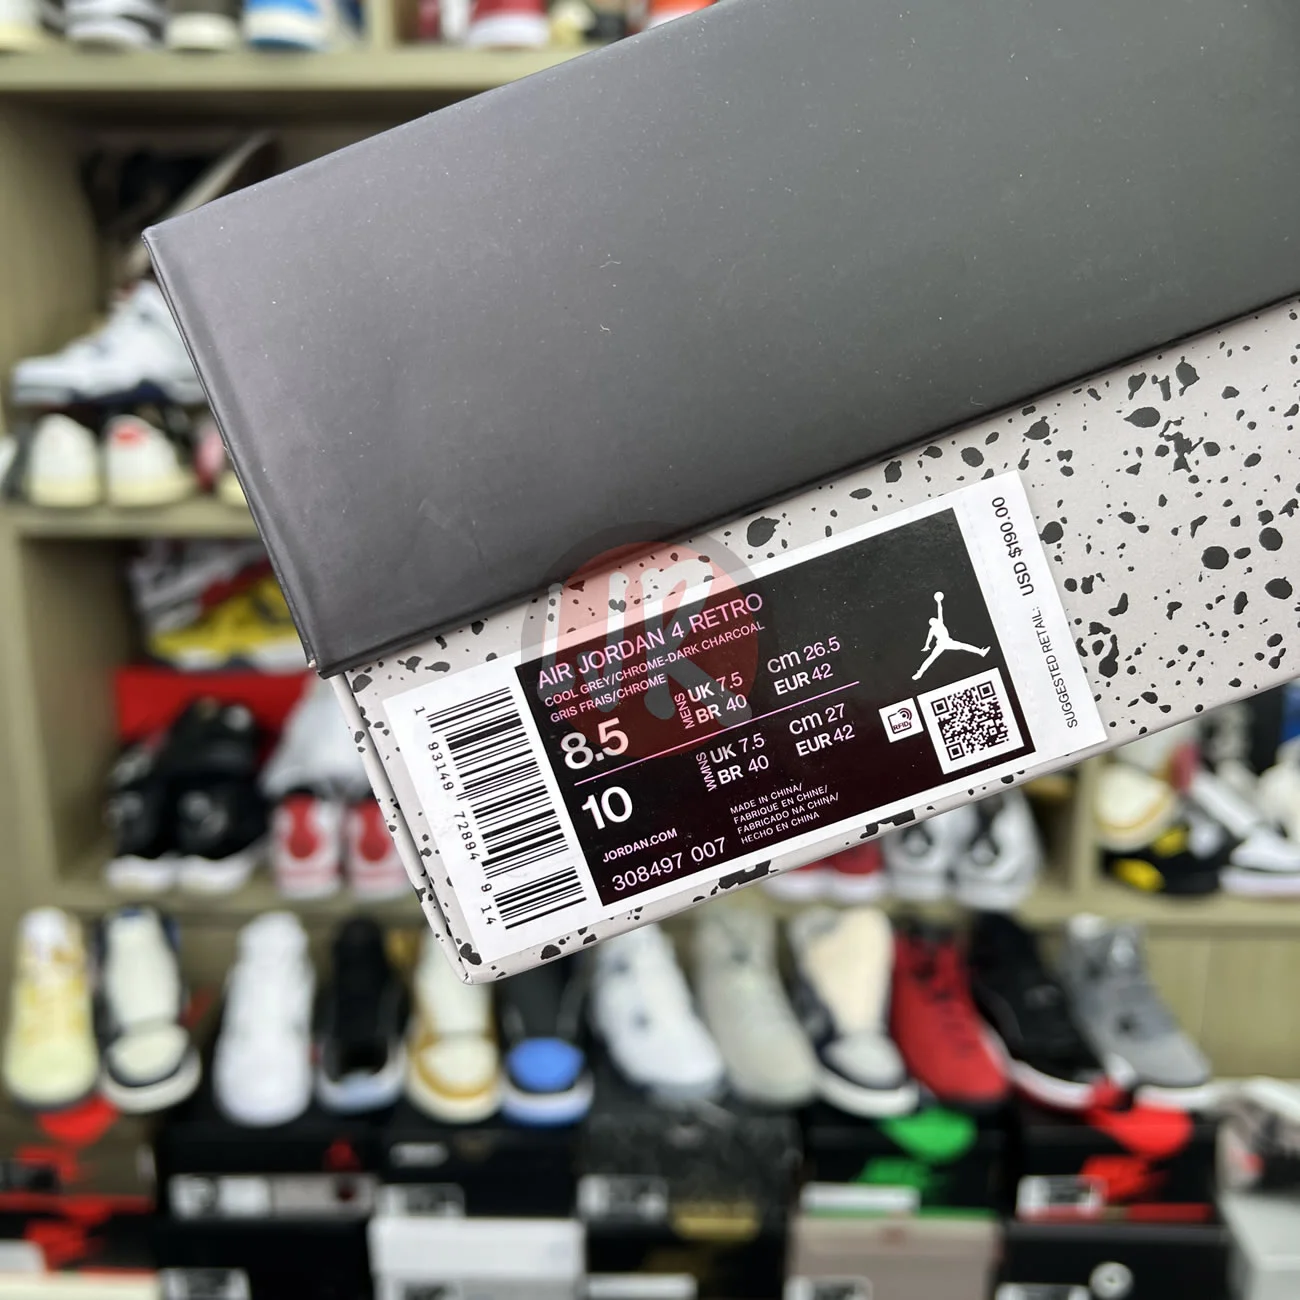 Air Jordan 4 Retro Cool Grey 2019 308497 007 Ljr Sneakers (25) - bc-ljr.net